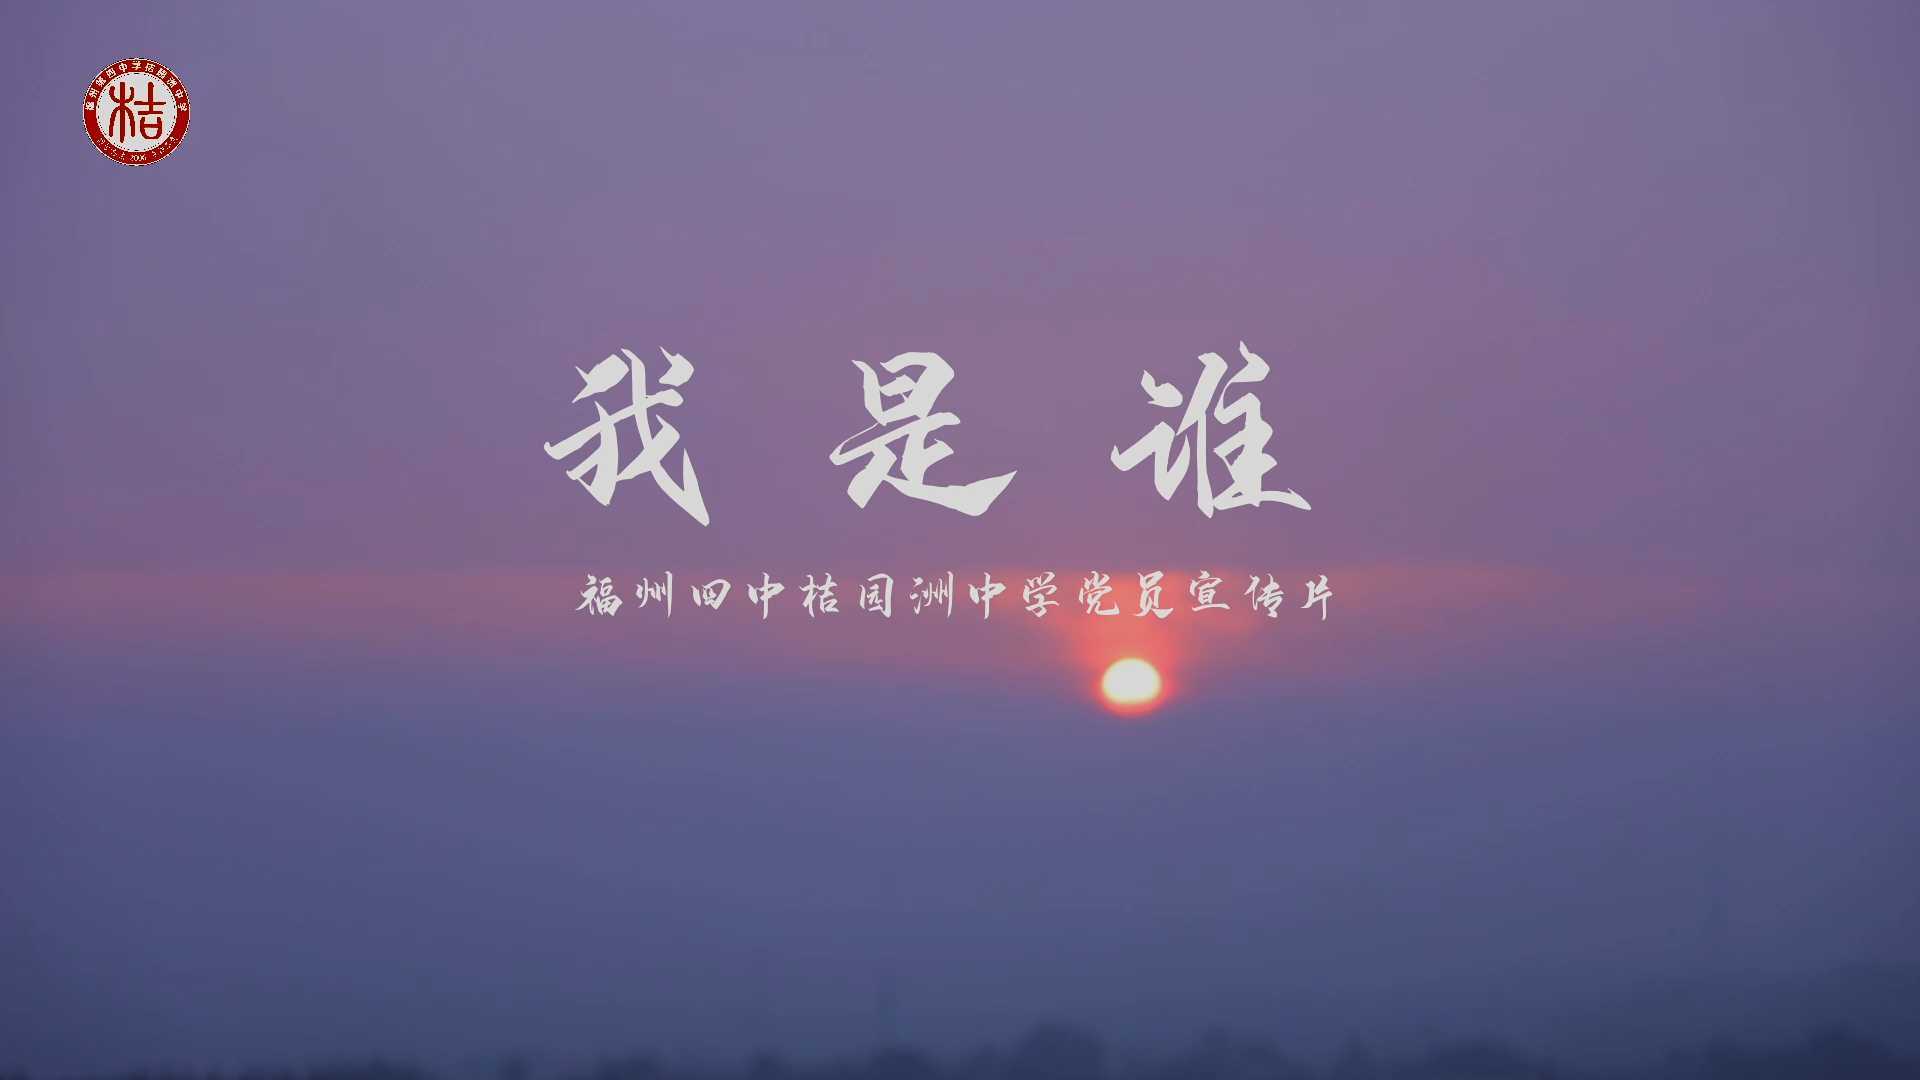 7.1-福州四中桔园洲中学党员宣传片《我是谁》